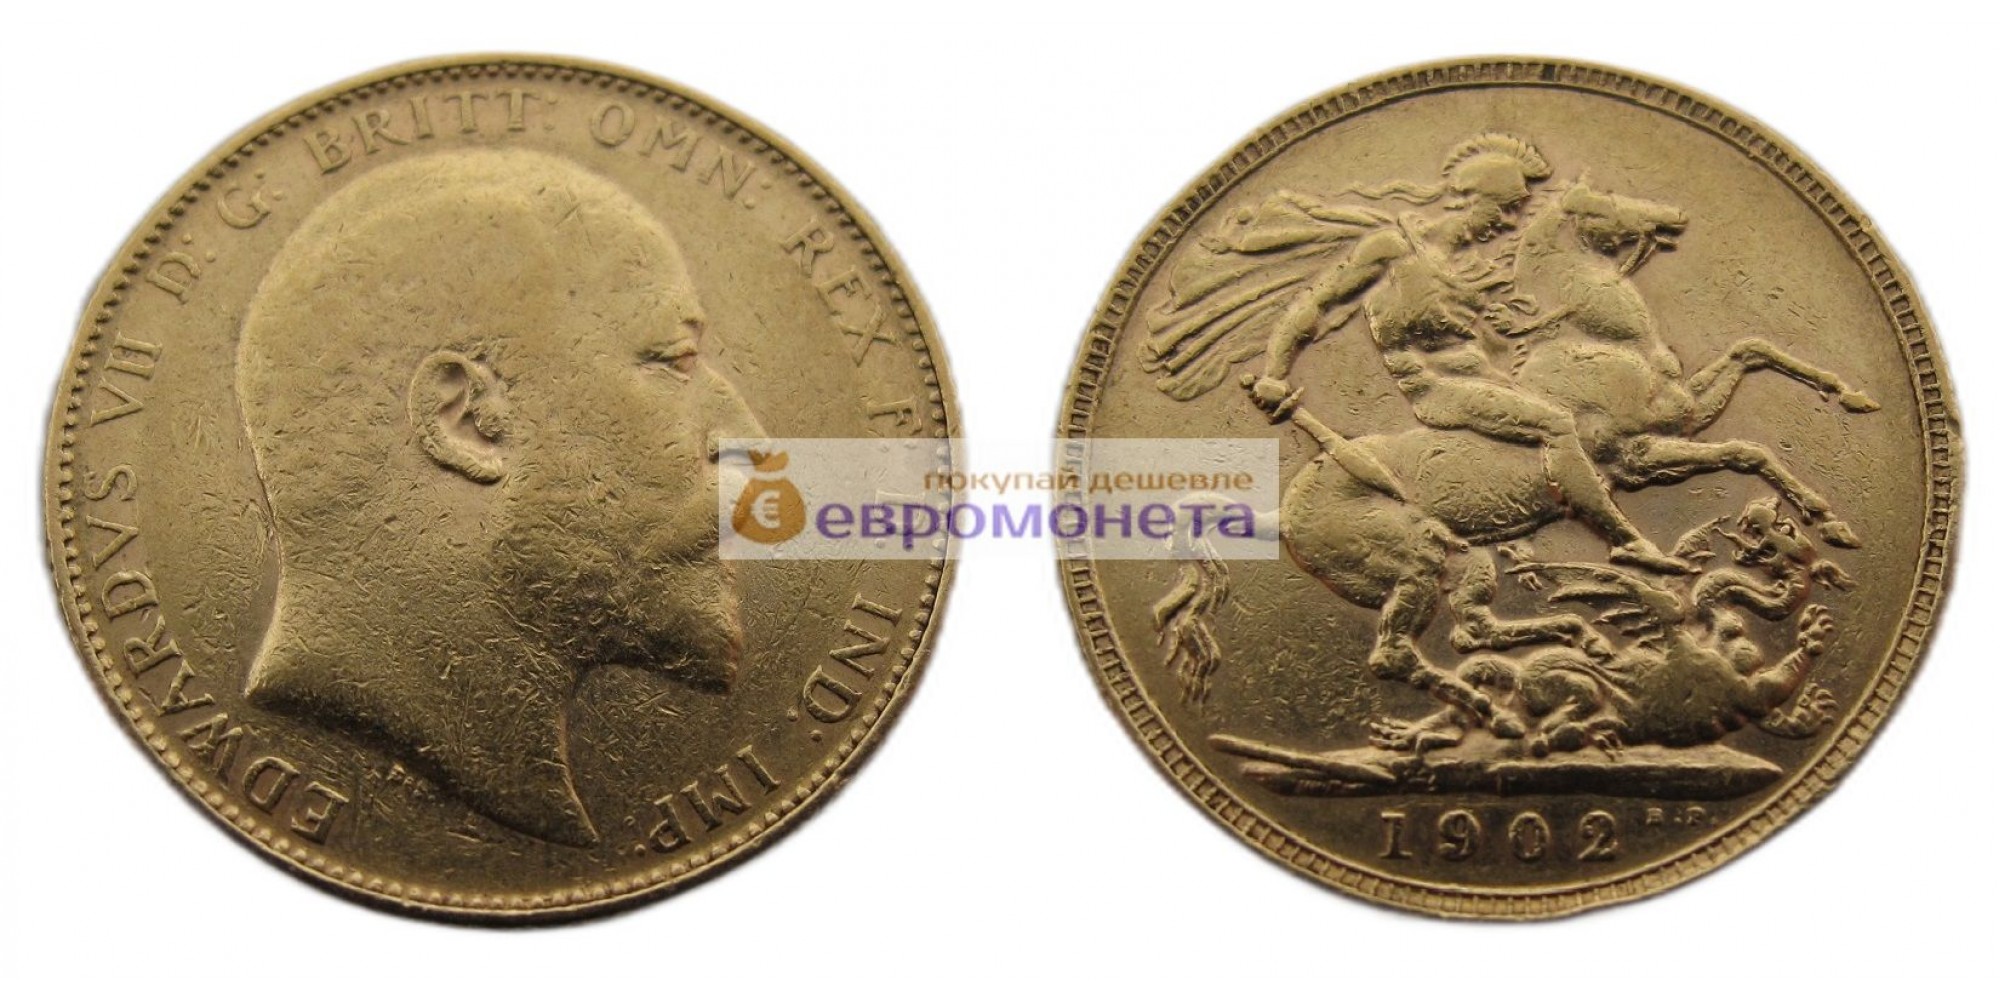 Австралия 1 соверен 1902 год. Король Эдуард VII. Отметка монетного двора "P" - Перт. Золото.